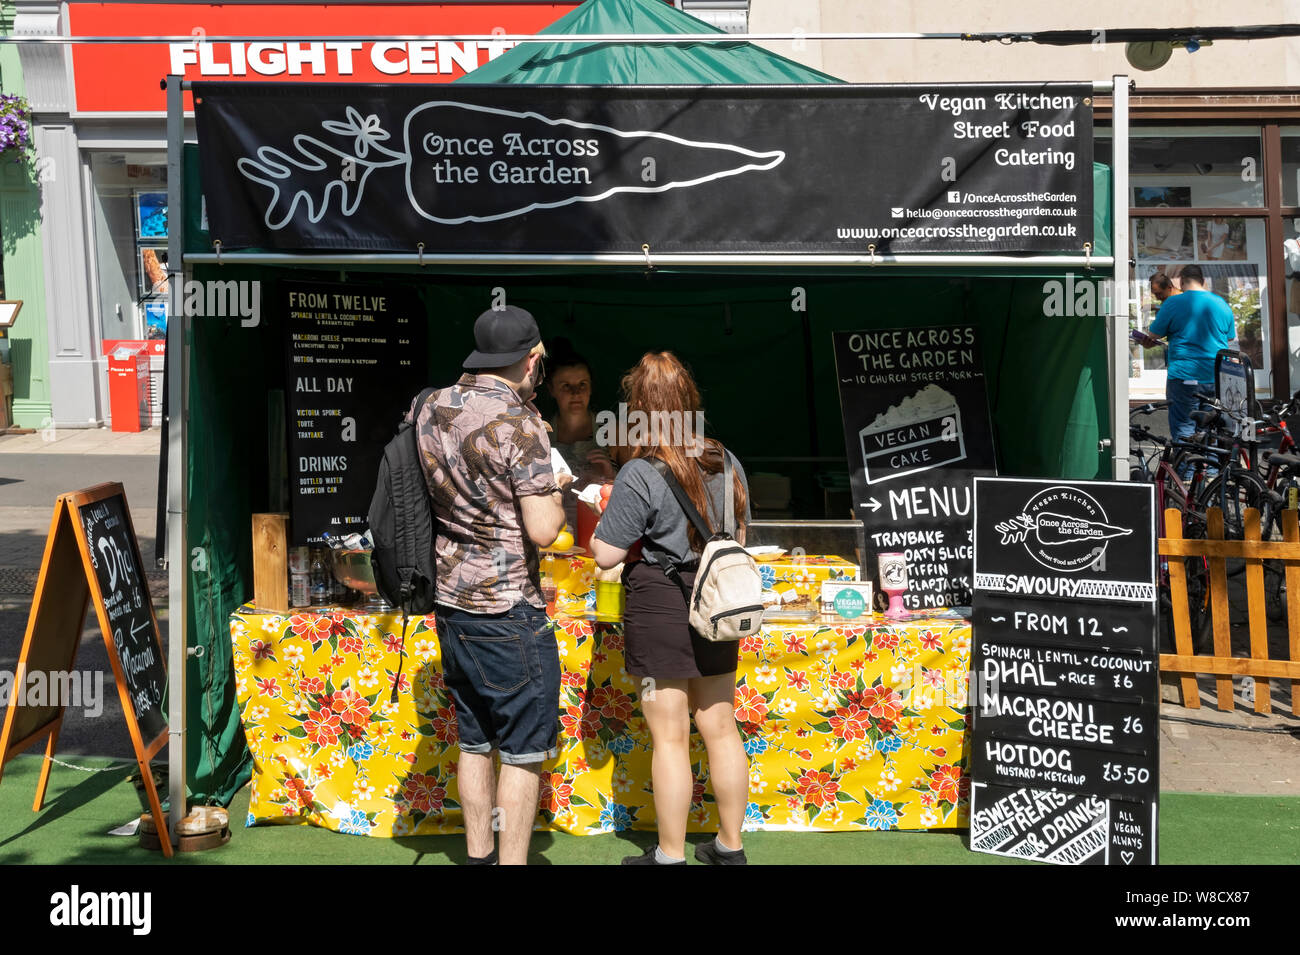 Les gens achetant de la nourriture à la cuisine vegan rue nourriture stalle en été York North Yorkshire Angleterre Royaume-Uni GB Grande-Bretagne Banque D'Images